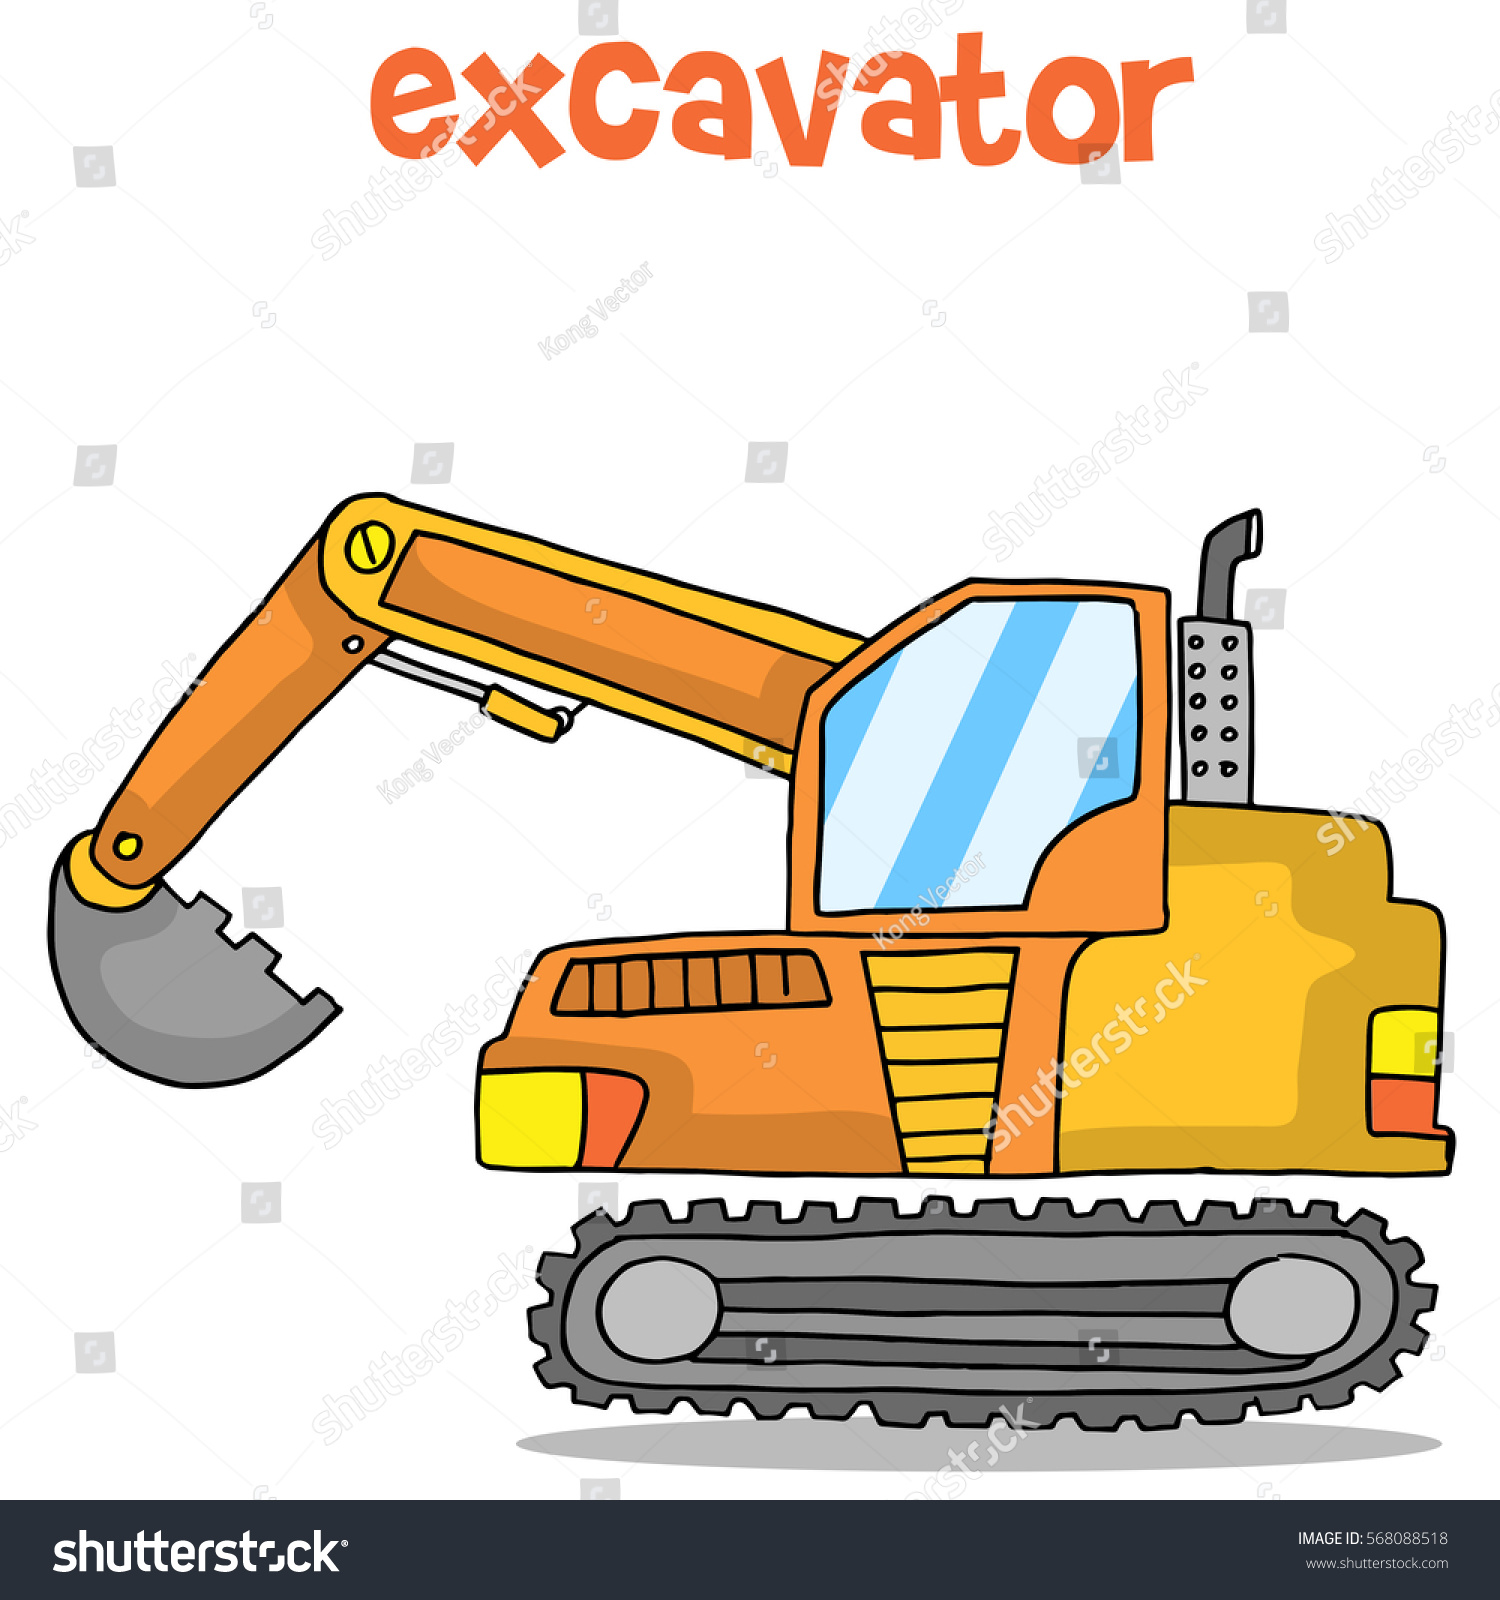 Download Cartoon Excavator Design Vector Art Stock Vector 568088518 ...